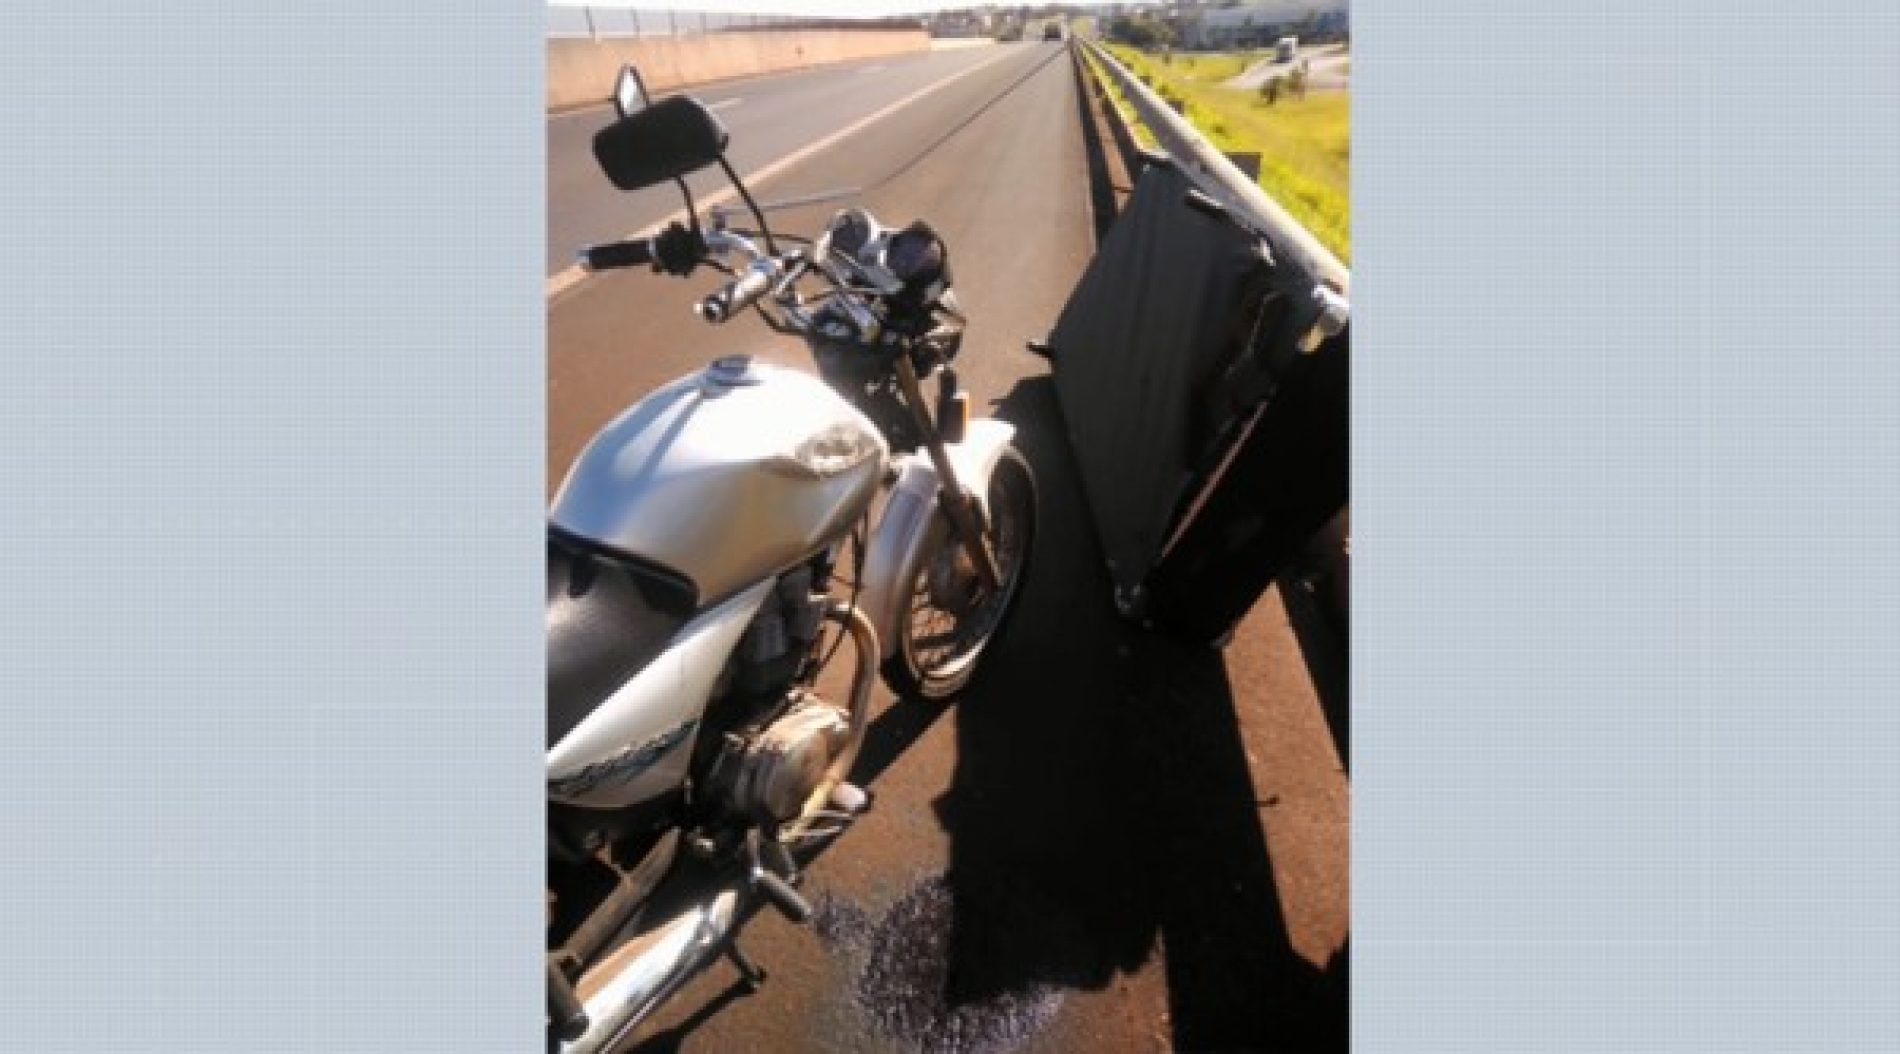 REGIÃO: Cama cai de carroceria e atinge motociclista no meio de rodovia